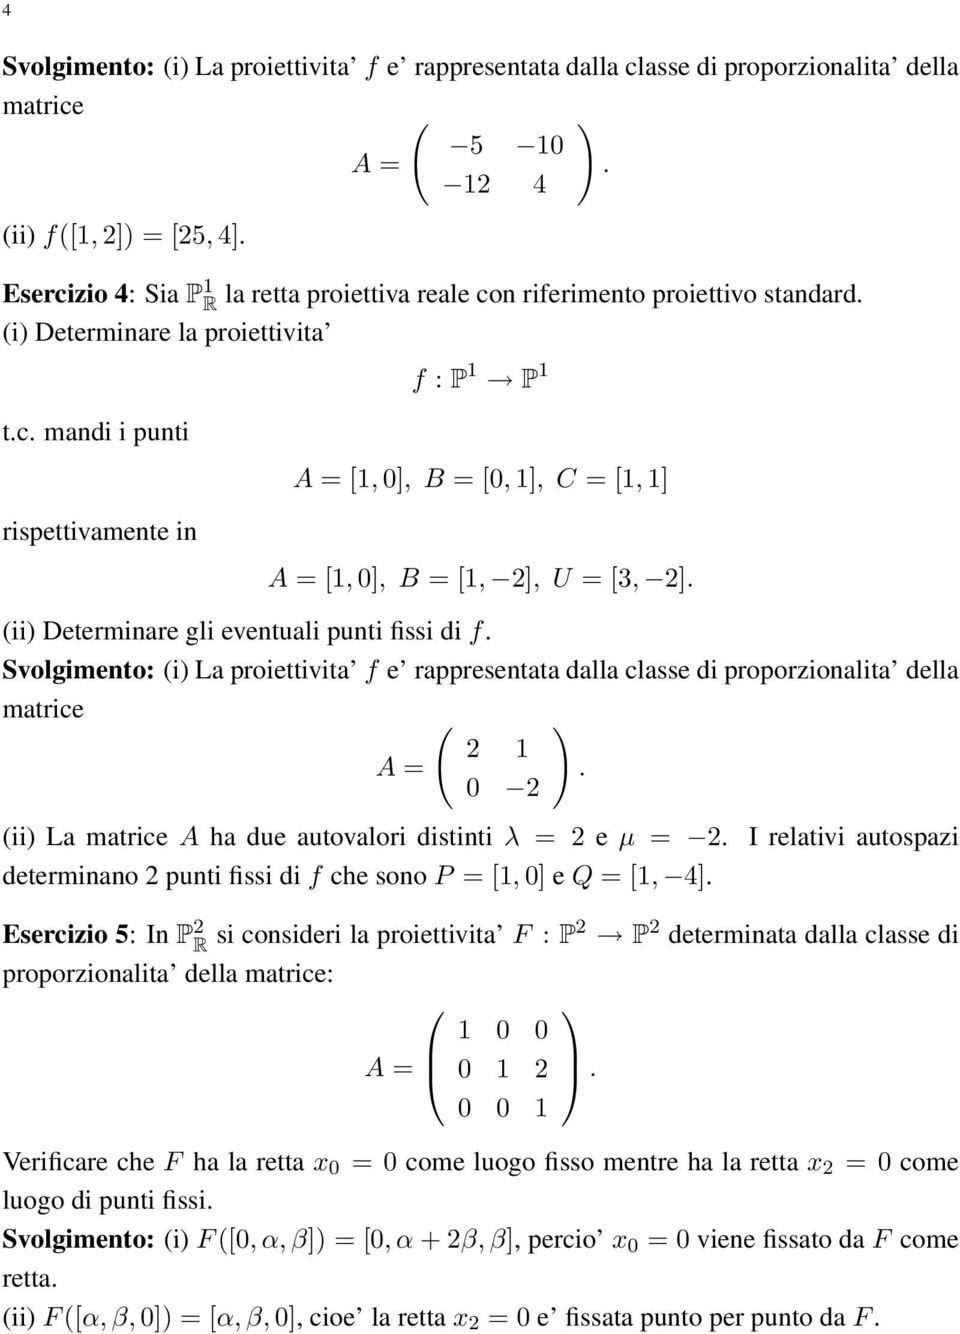 fissi di f Svolgimento: (i) La proiettivita f e rappresentata dalla classe di proporzionalita della matrice ( 2 1 0 2 (ii) La matrice A ha due autovalori distinti λ = 2 e µ = 2 determinano 2 punti